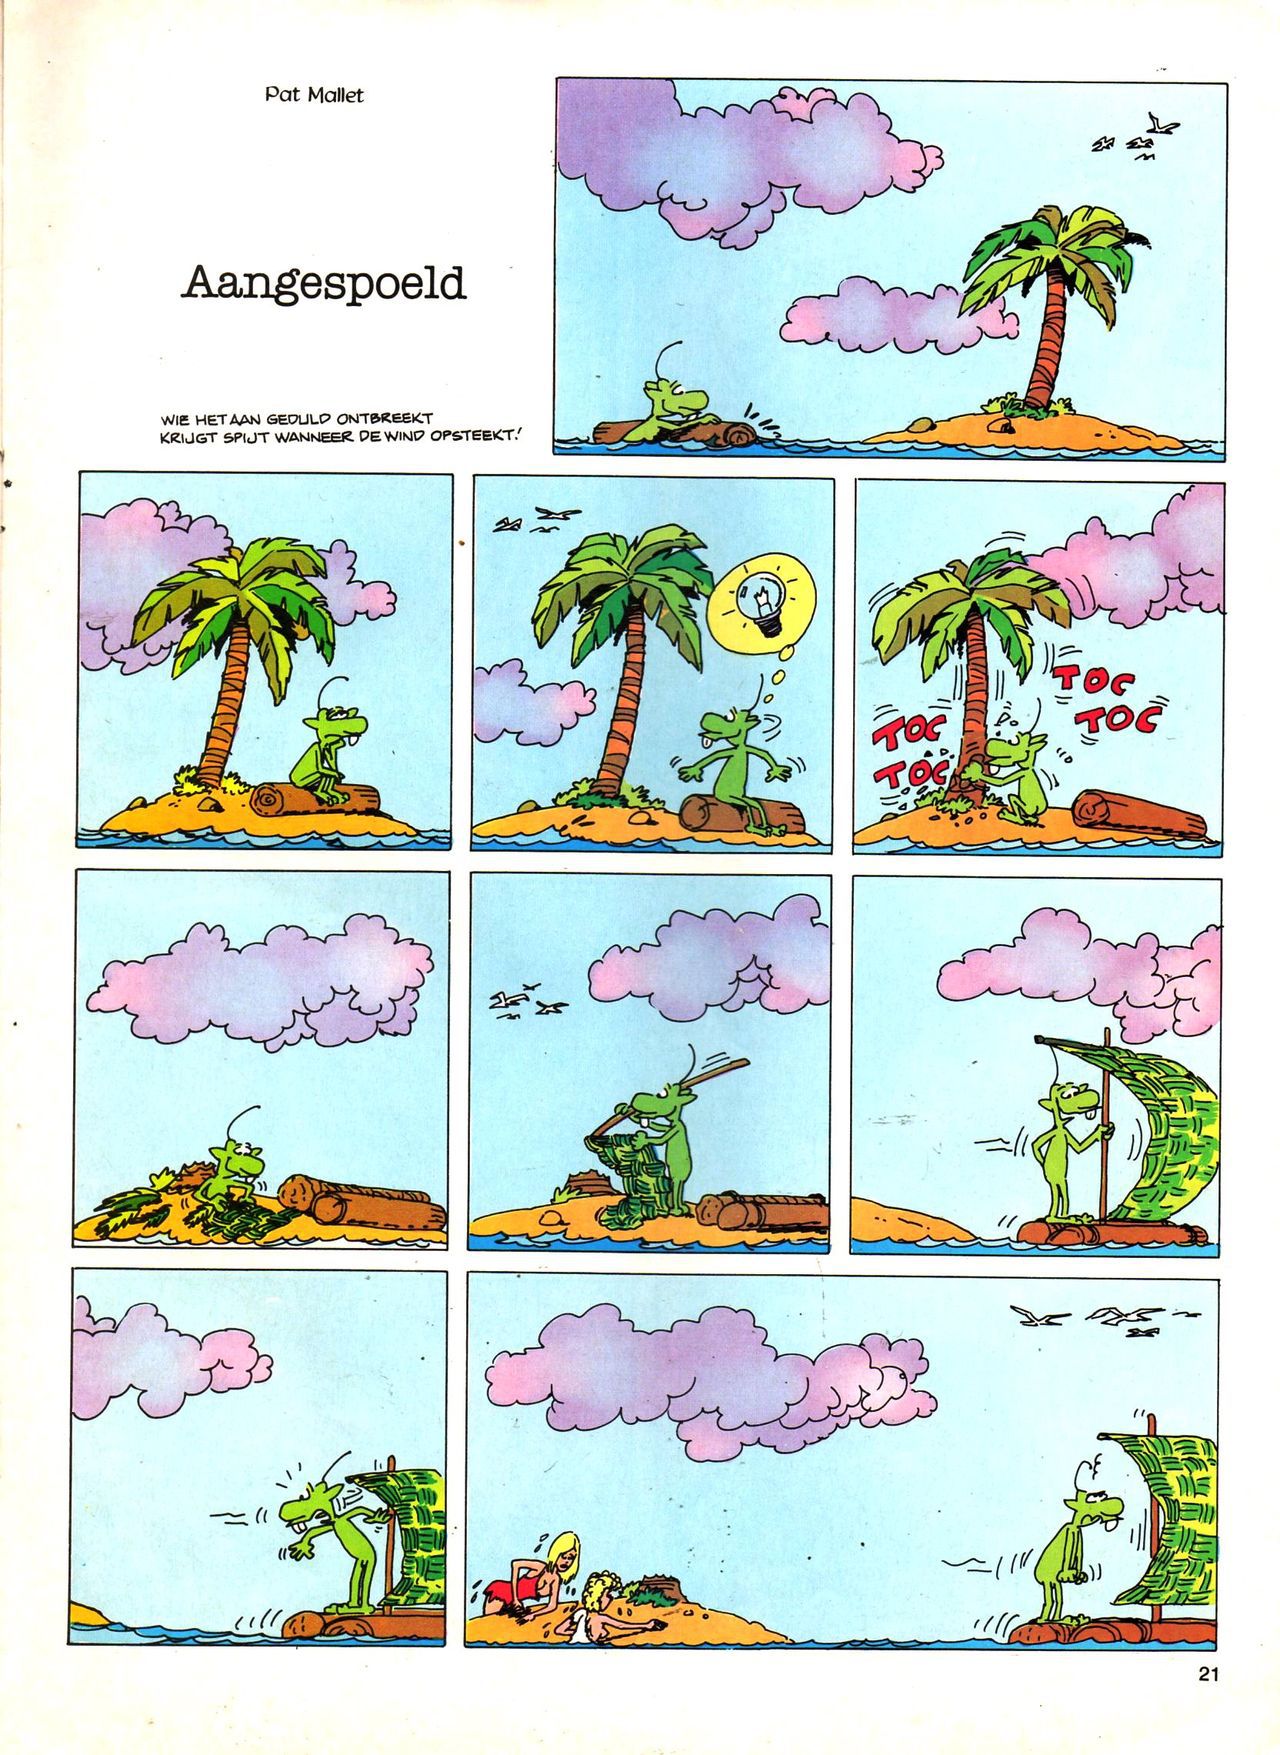 Het Is Groen En Het.. - 04 - Mag Ik Die Ballen.. OH, PARDON! (Dutch) Een oude humoristische serie van Pat Mallet 21